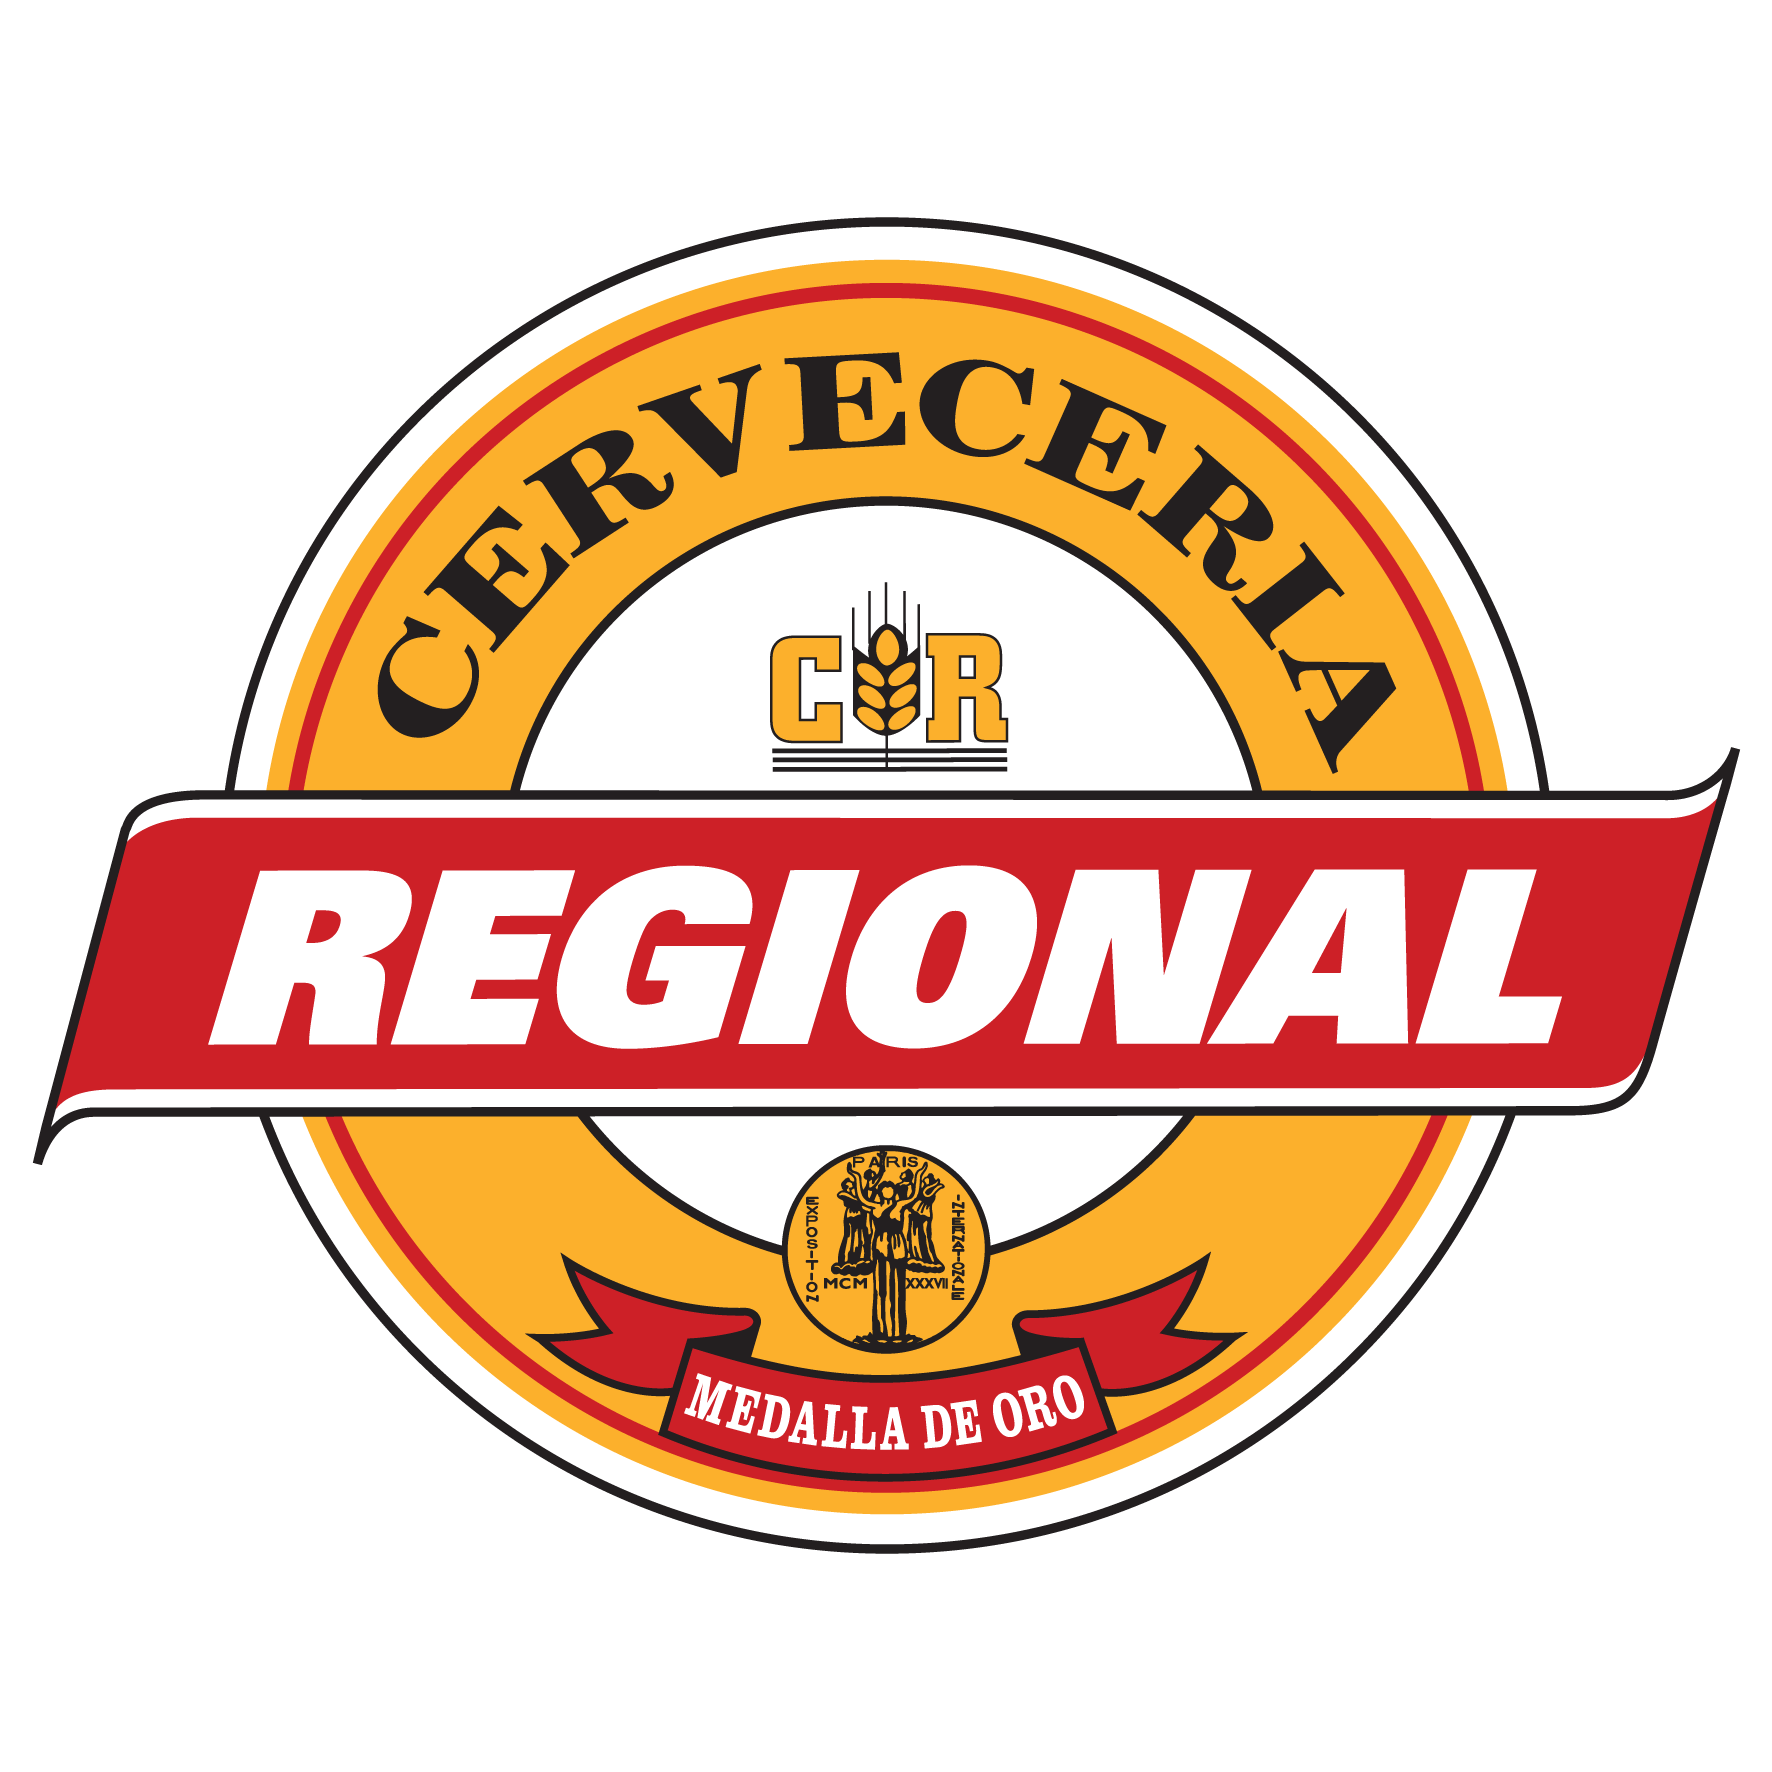 Regional Logo - Descargasía Regional